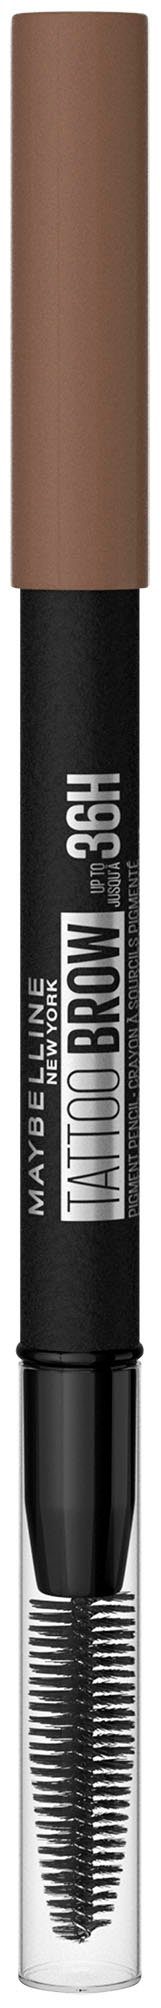 MAYBELLINE NEW YORK Augenbrauen-Stift Tattoo mit Brow 36H, Ash wasserfeste Brown Formel, Augen-Make-Up Bürste, 6